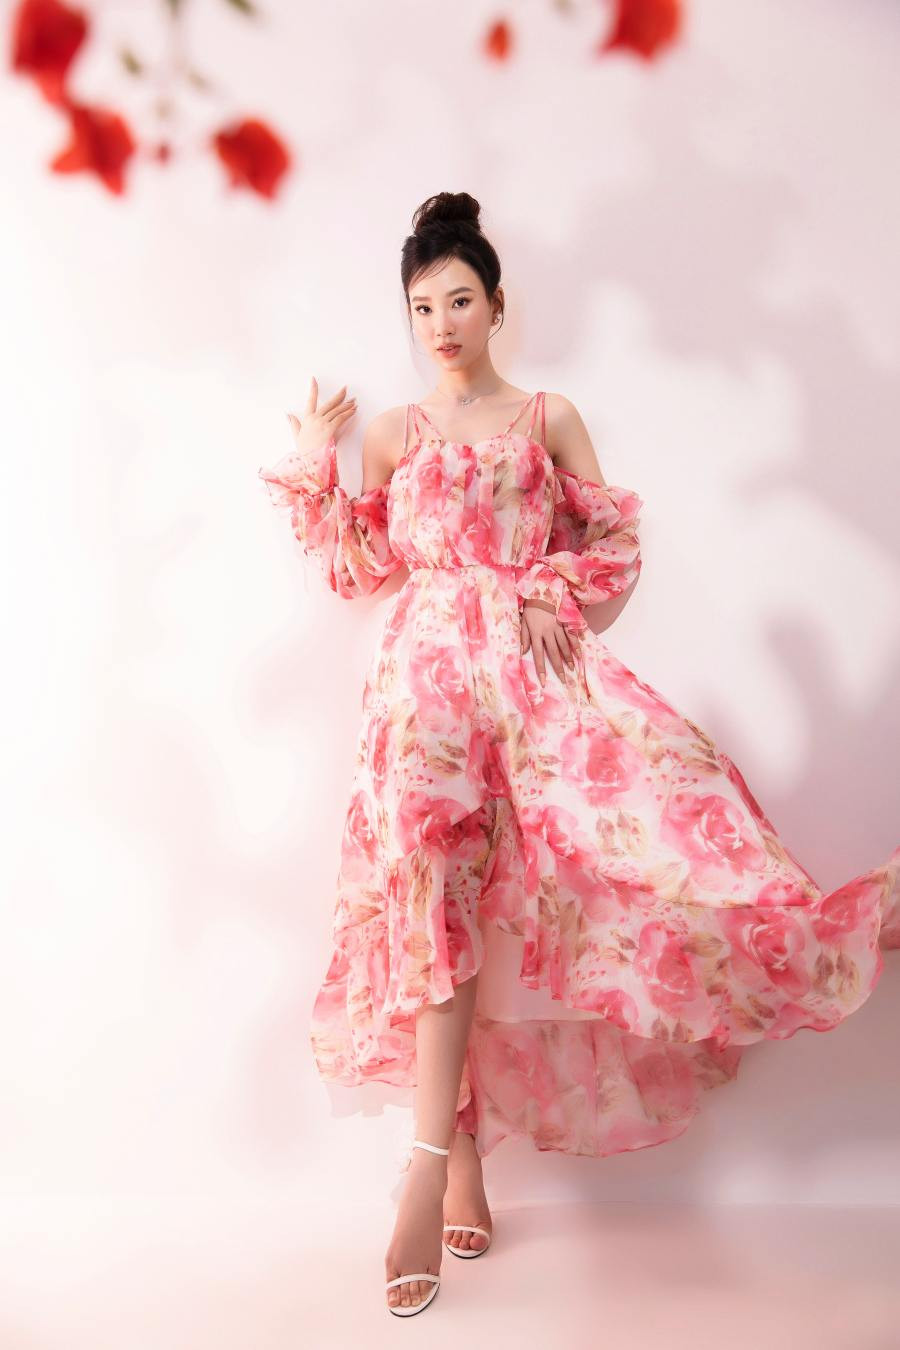 Đại diện Việt Nam tại Hoa hậu Liên lục địa diện váy hoa rực rỡ của NTK Đỗ Long - 6